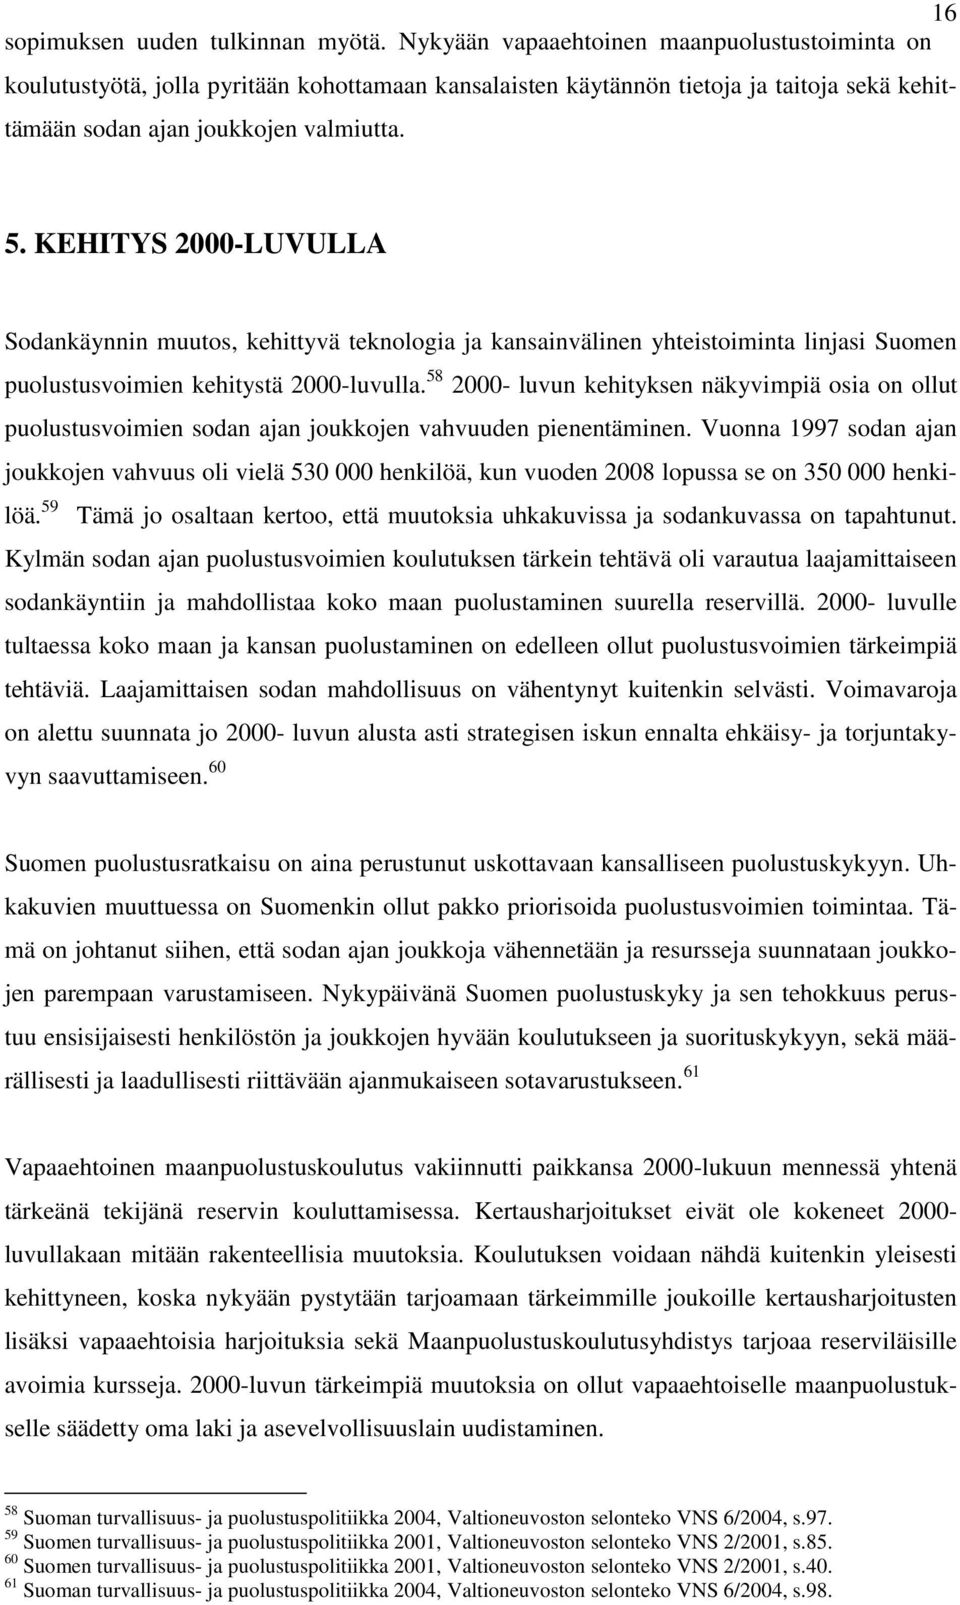 KEHITYS 2000-LUVULLA Sodankäynnin muutos, kehittyvä teknologia ja kansainvälinen yhteistoiminta linjasi Suomen puolustusvoimien kehitystä 2000-luvulla.